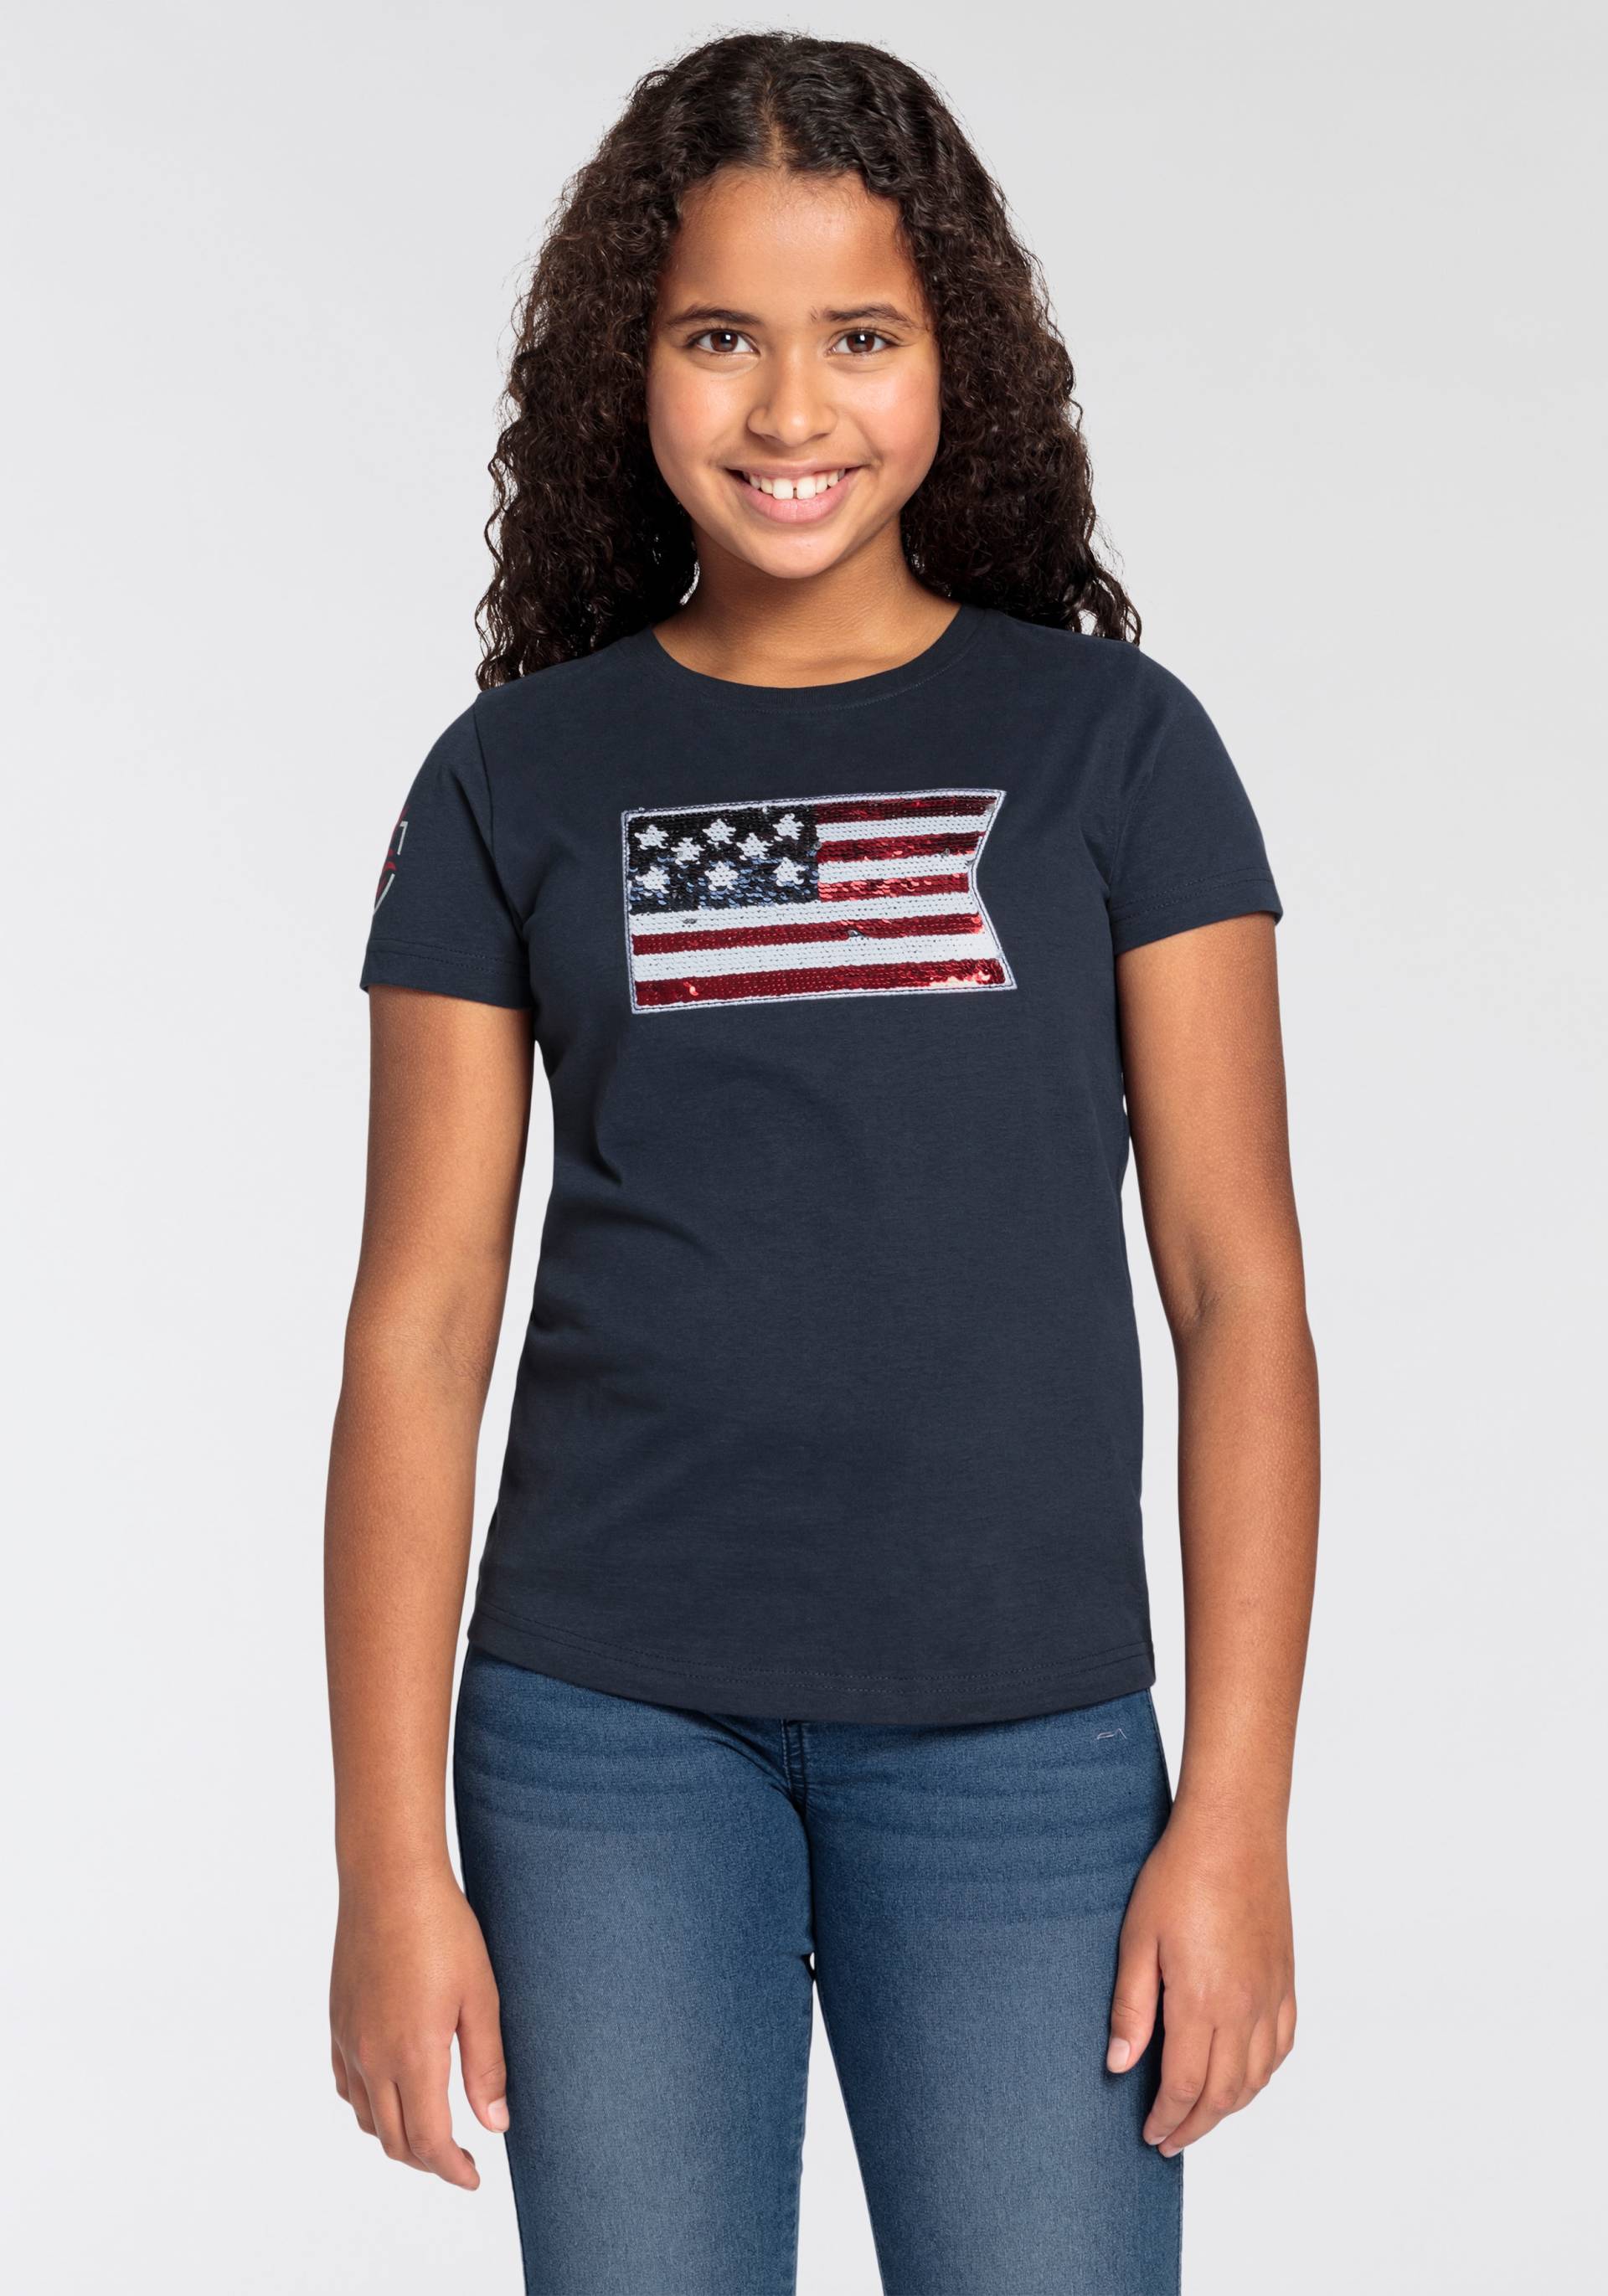 DELMAO T-Shirt »für Mädchen« von DELMAO